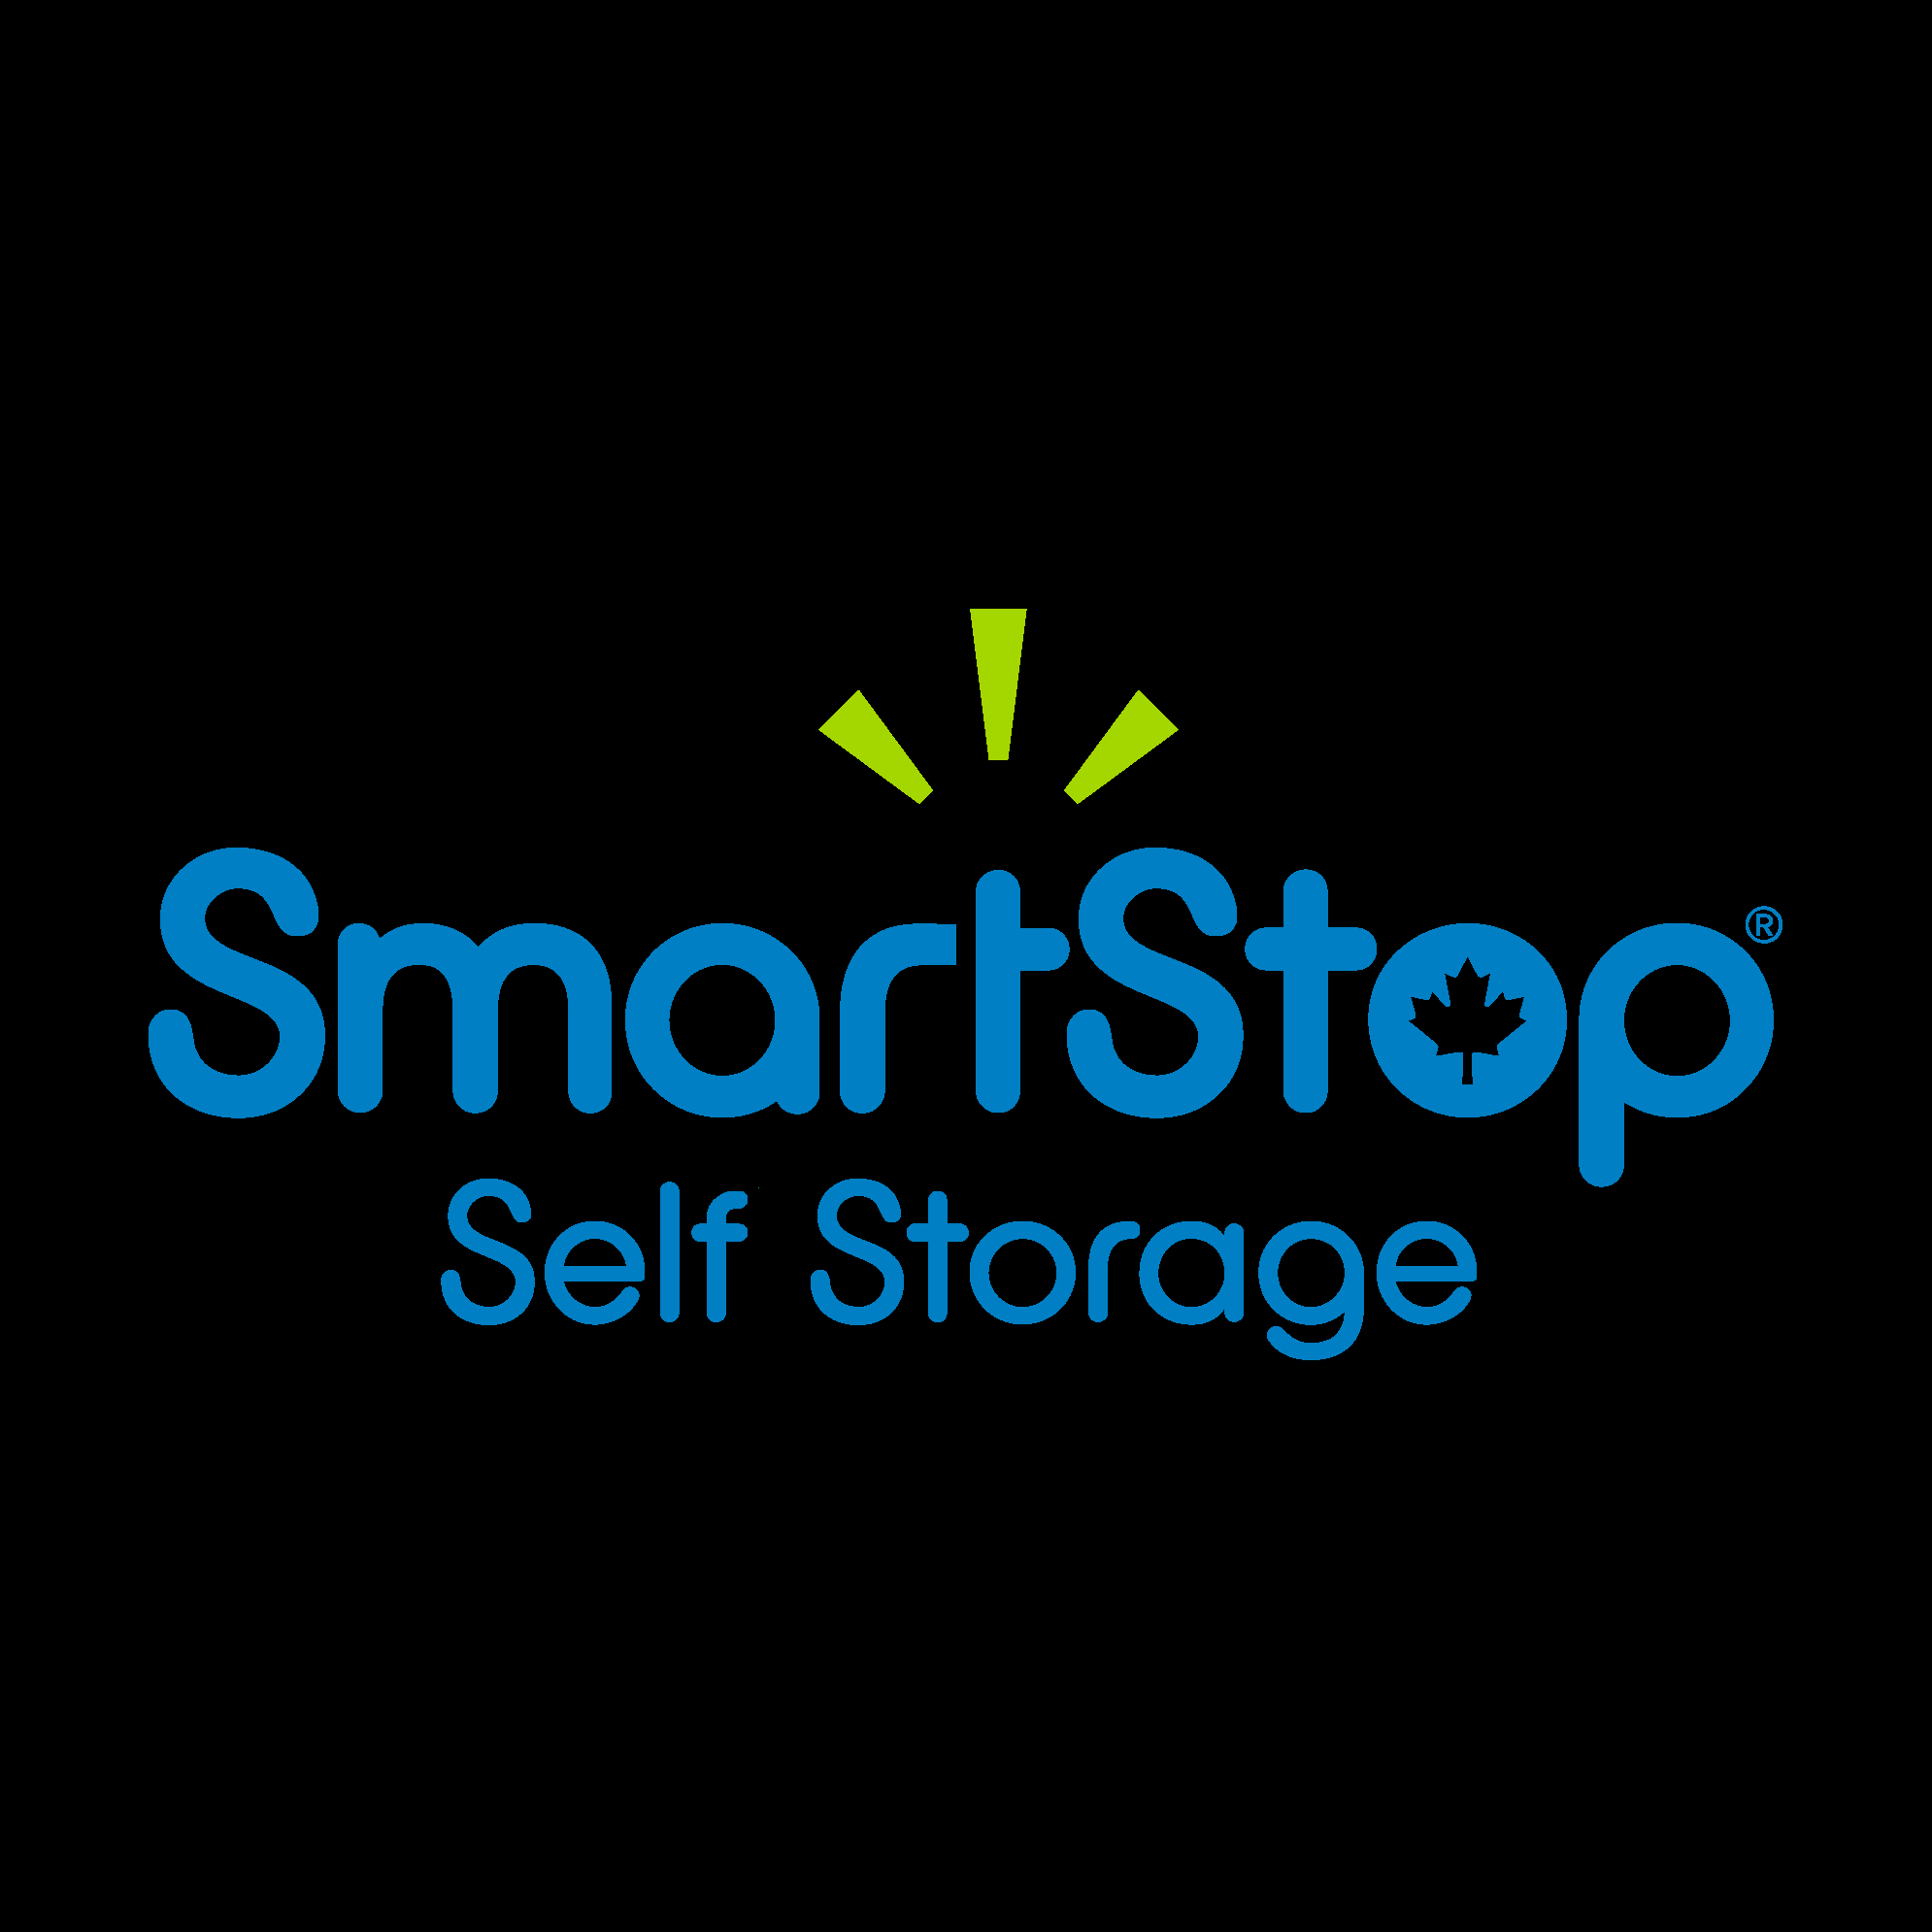 SmartStop Self Storage - Self-Storage